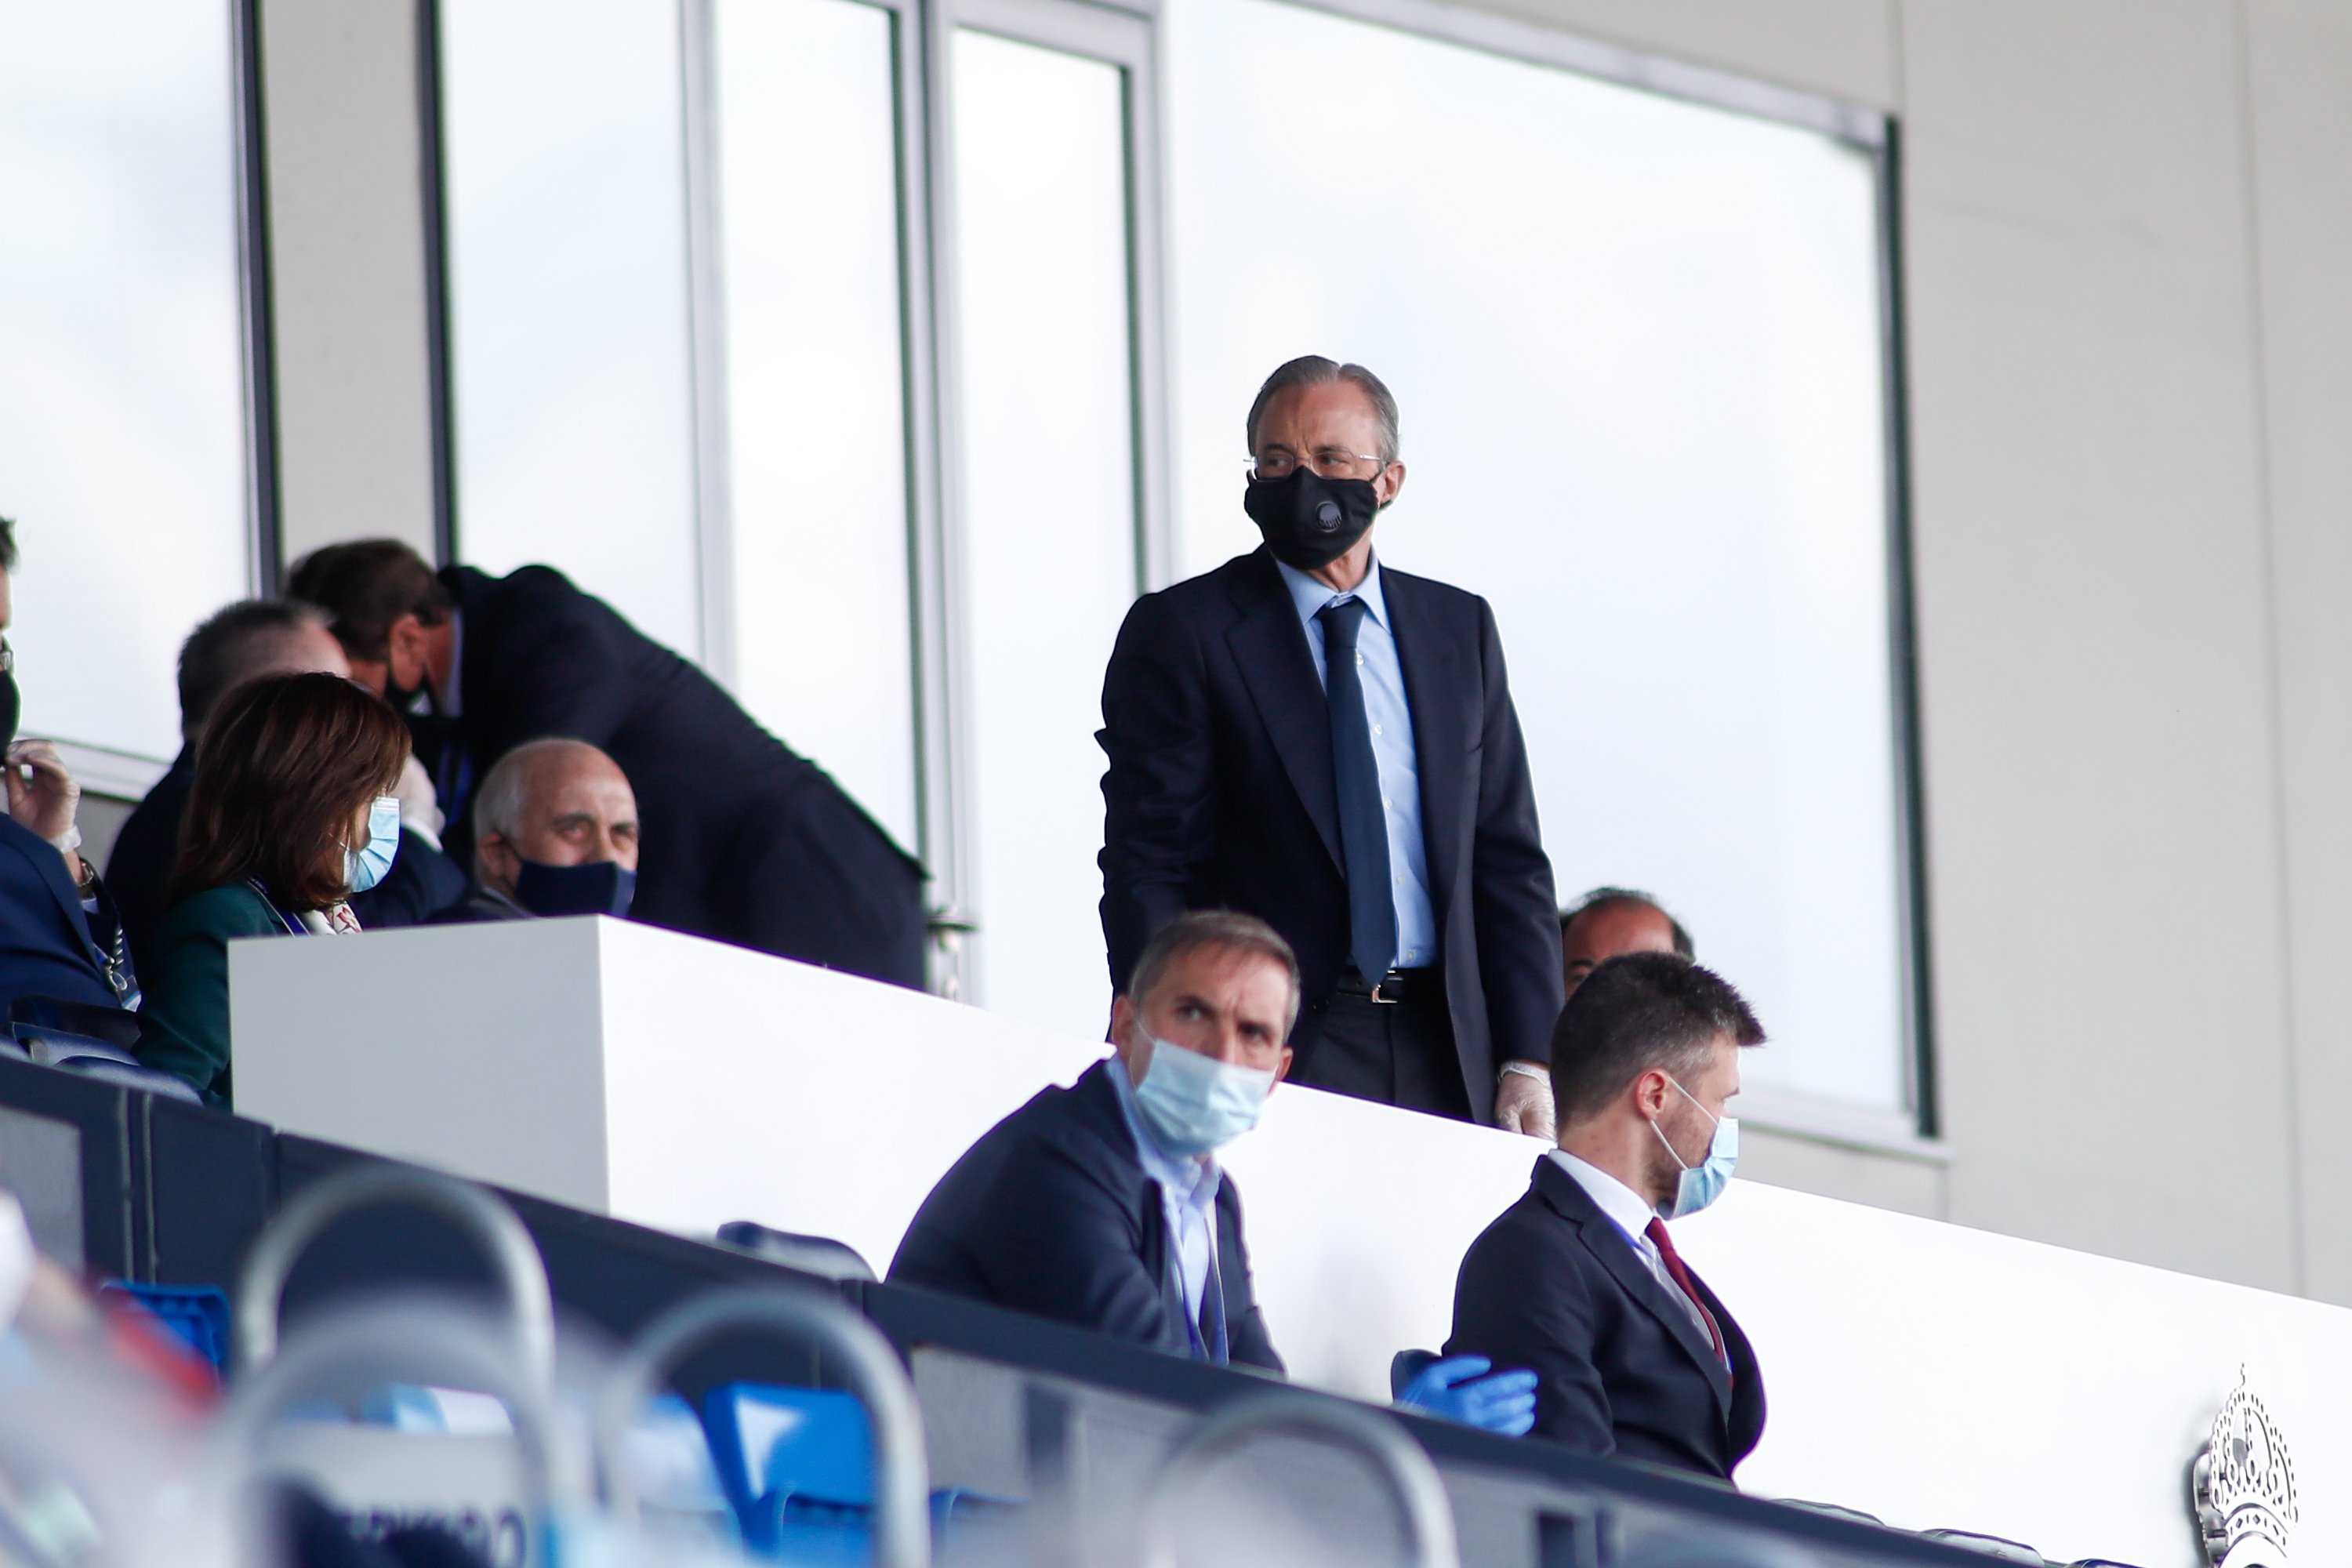 Estima tant el Reial Madrid que ha demanat a Florentino Pérez continuar jugant pràcticament gratis